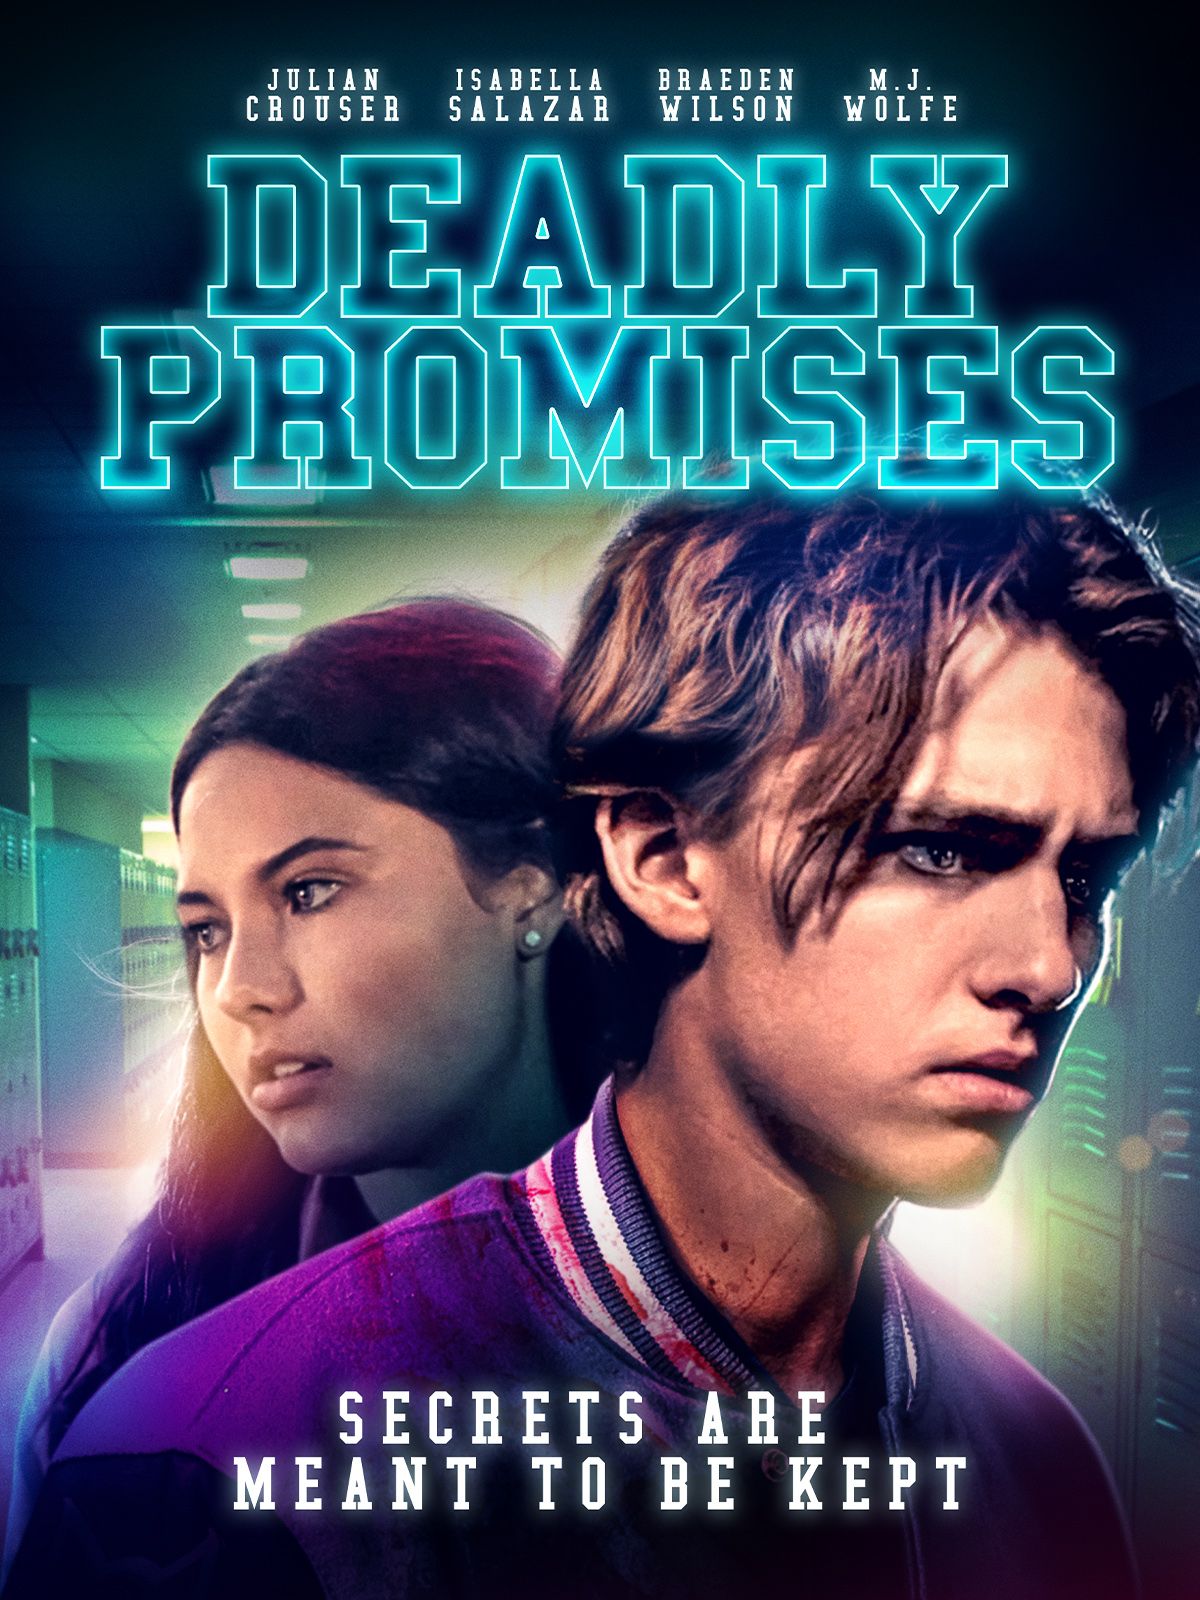 Keyart for the movie Deadly Promises